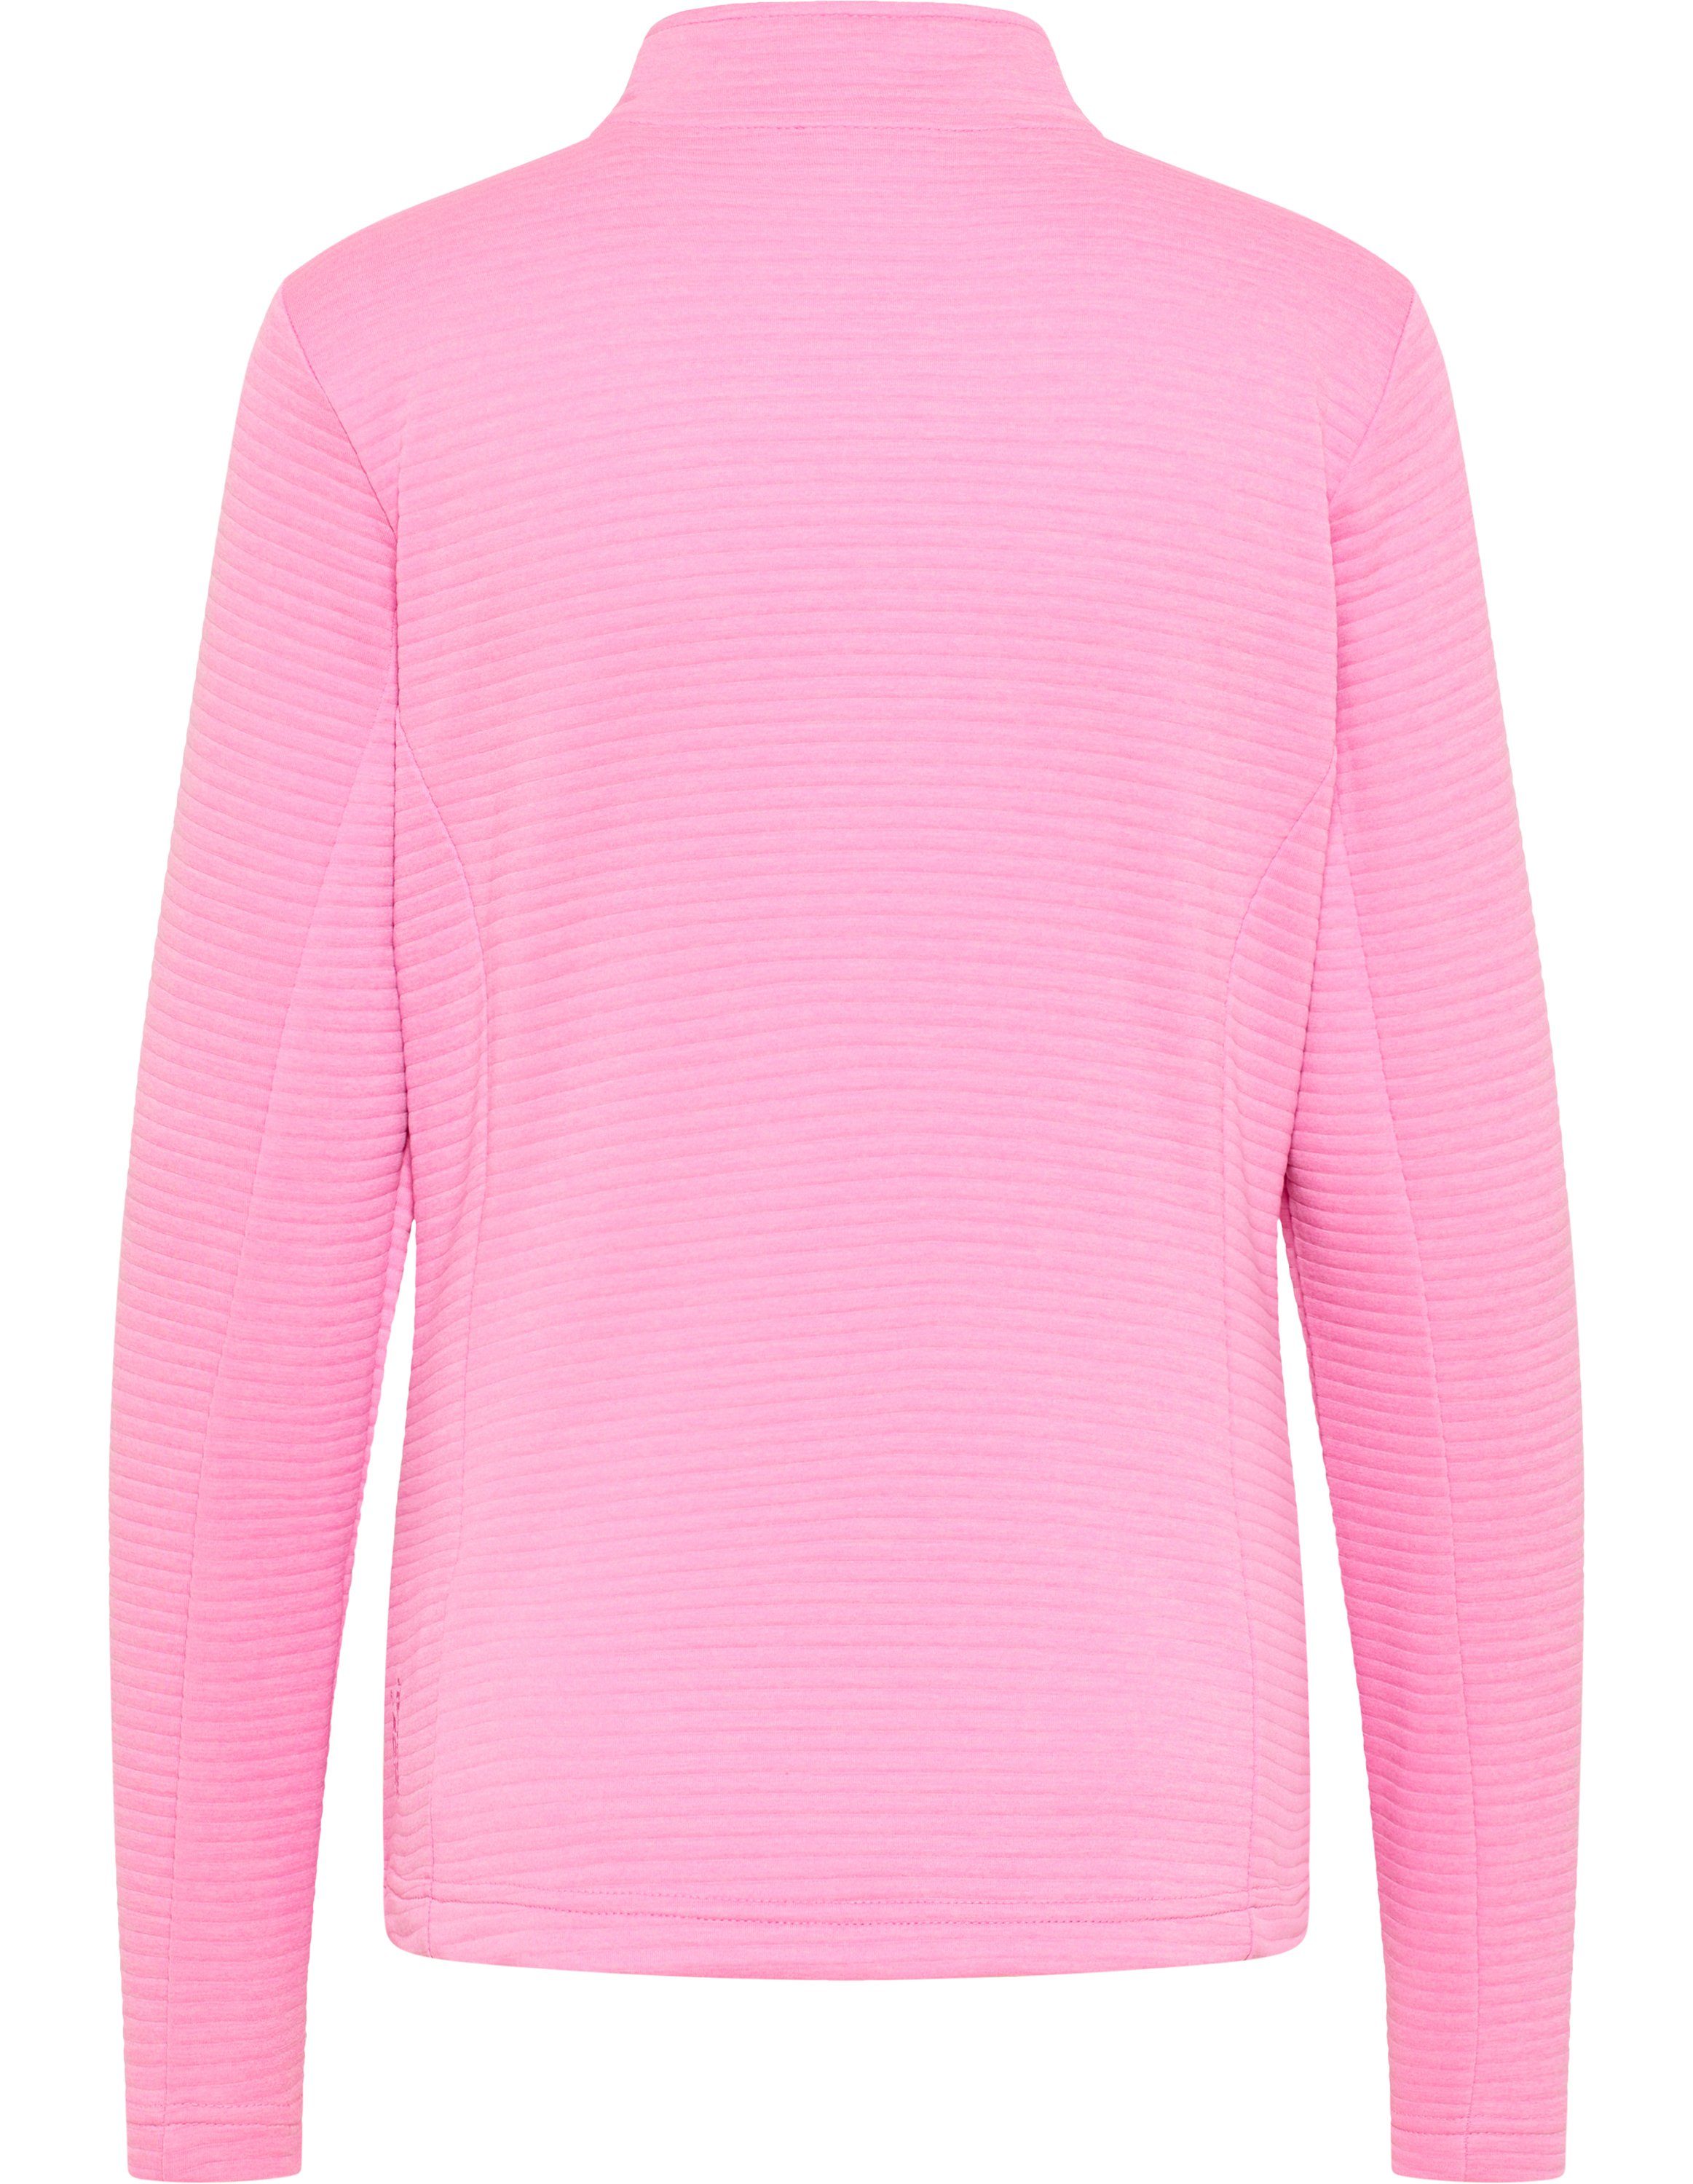 Trainingsjacke Joy PEGGY Jacke Sportswear melange pink cyclam